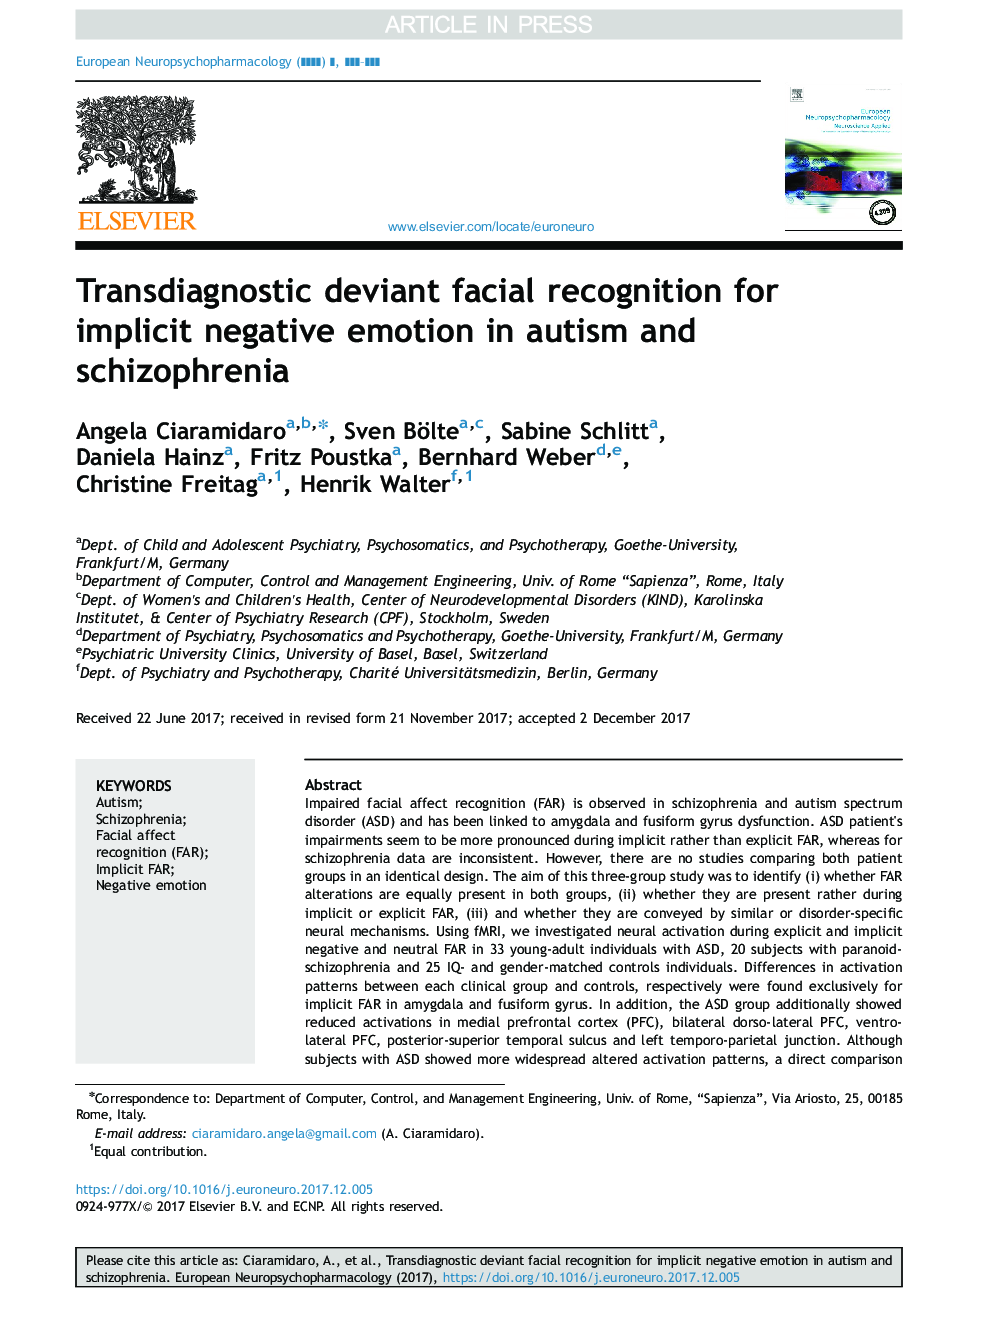 تشخیص چهره دیفرانسیل تشخیصی برای احساسات ضمنی منفی در اوتیسم و ​​اسکیزوفرنیا 